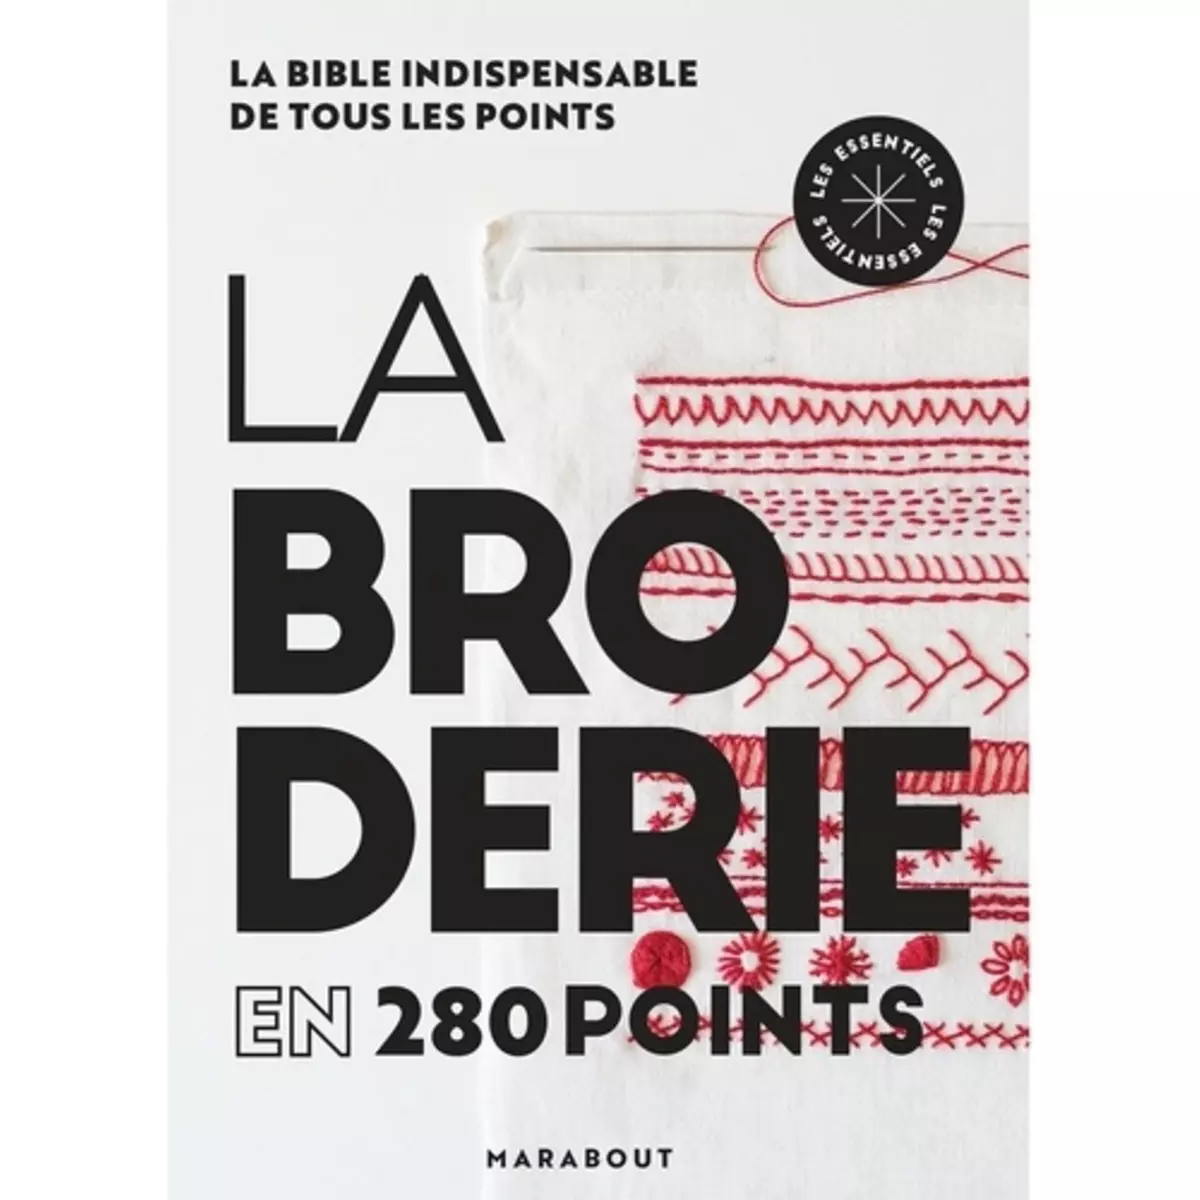  LE BRODERIE EN 280 POINTS, Nicolas Hélène